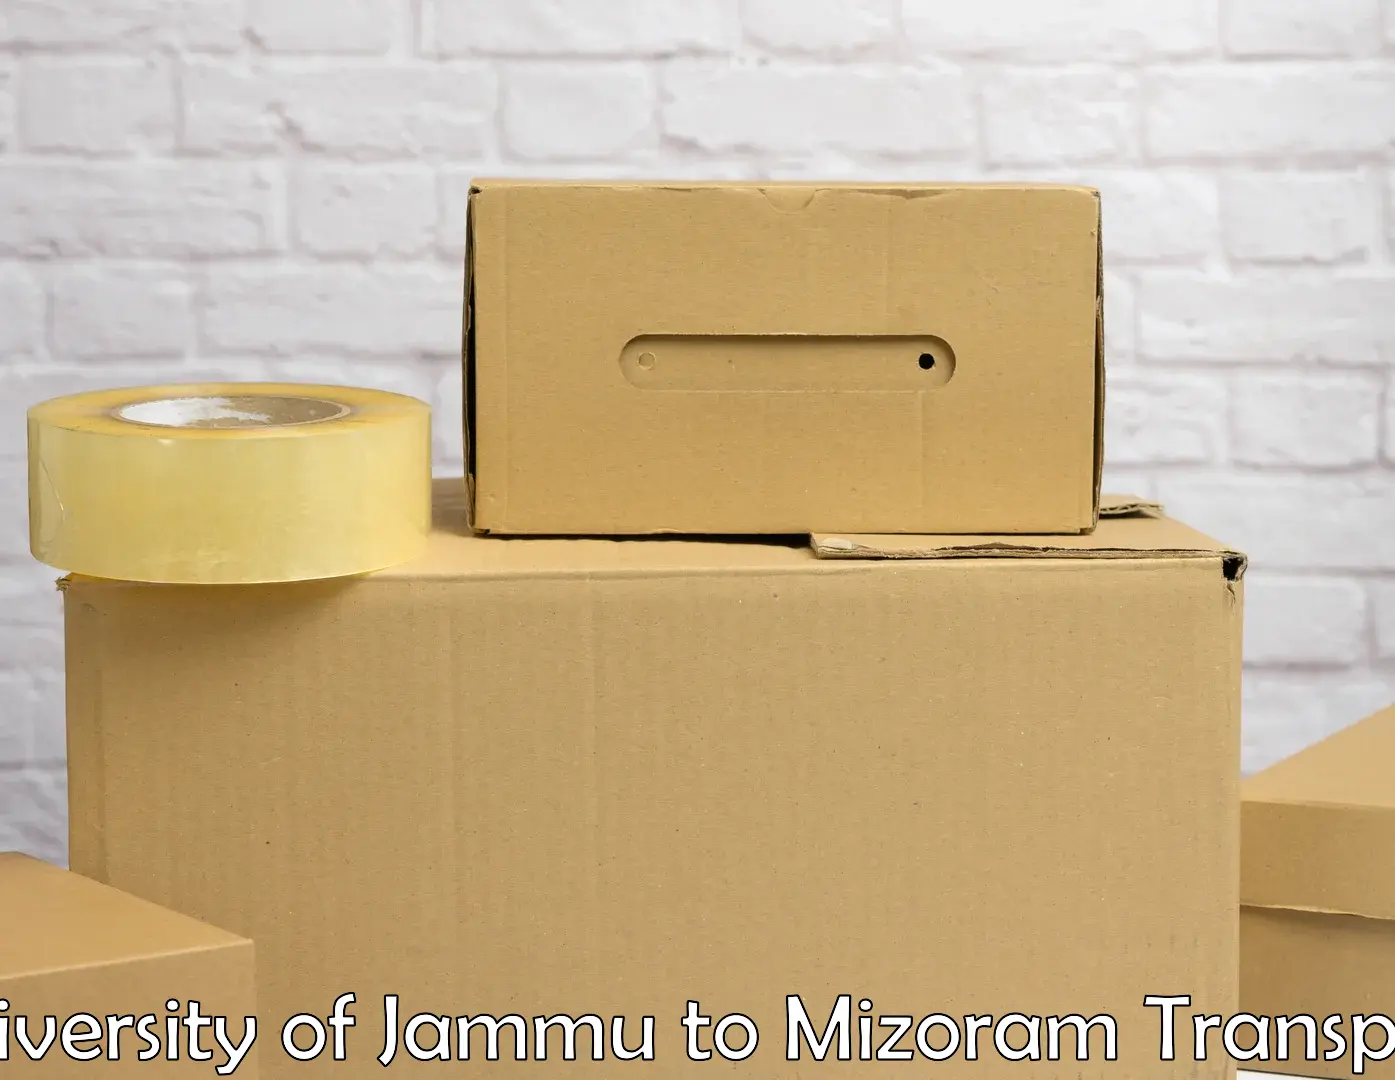 Door to door transport services in University of Jammu to Mizoram